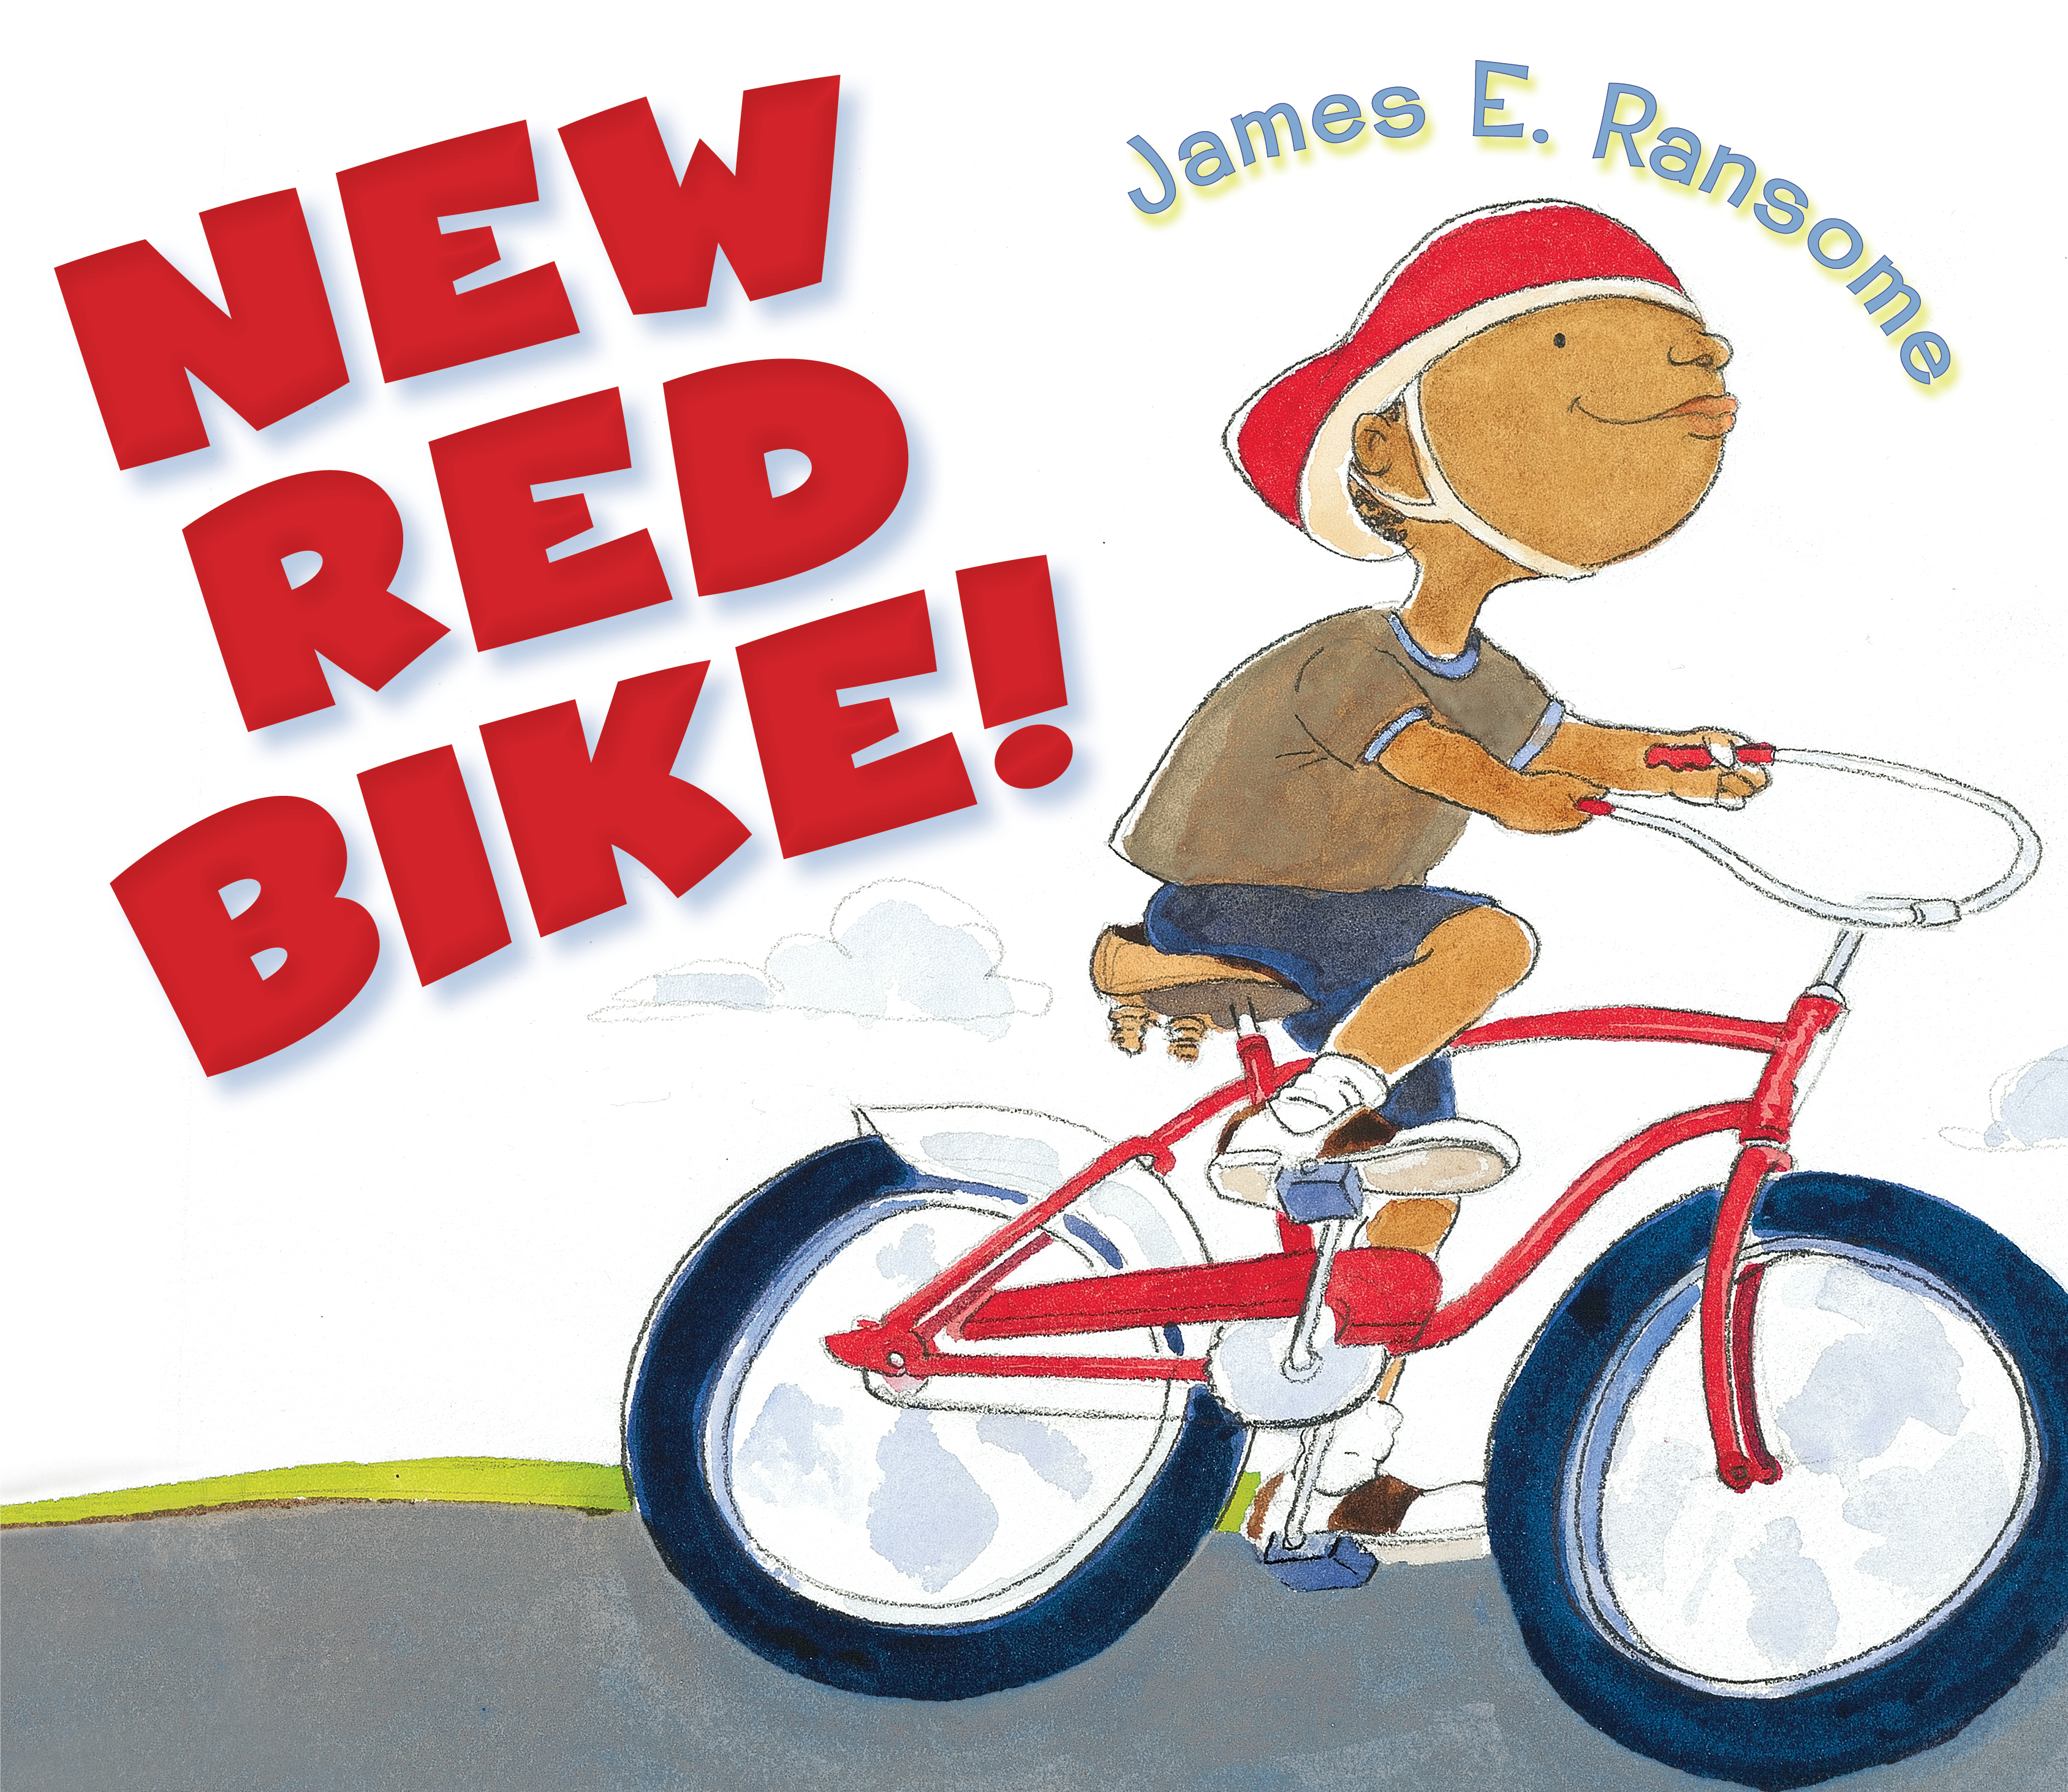 New Red Bike!